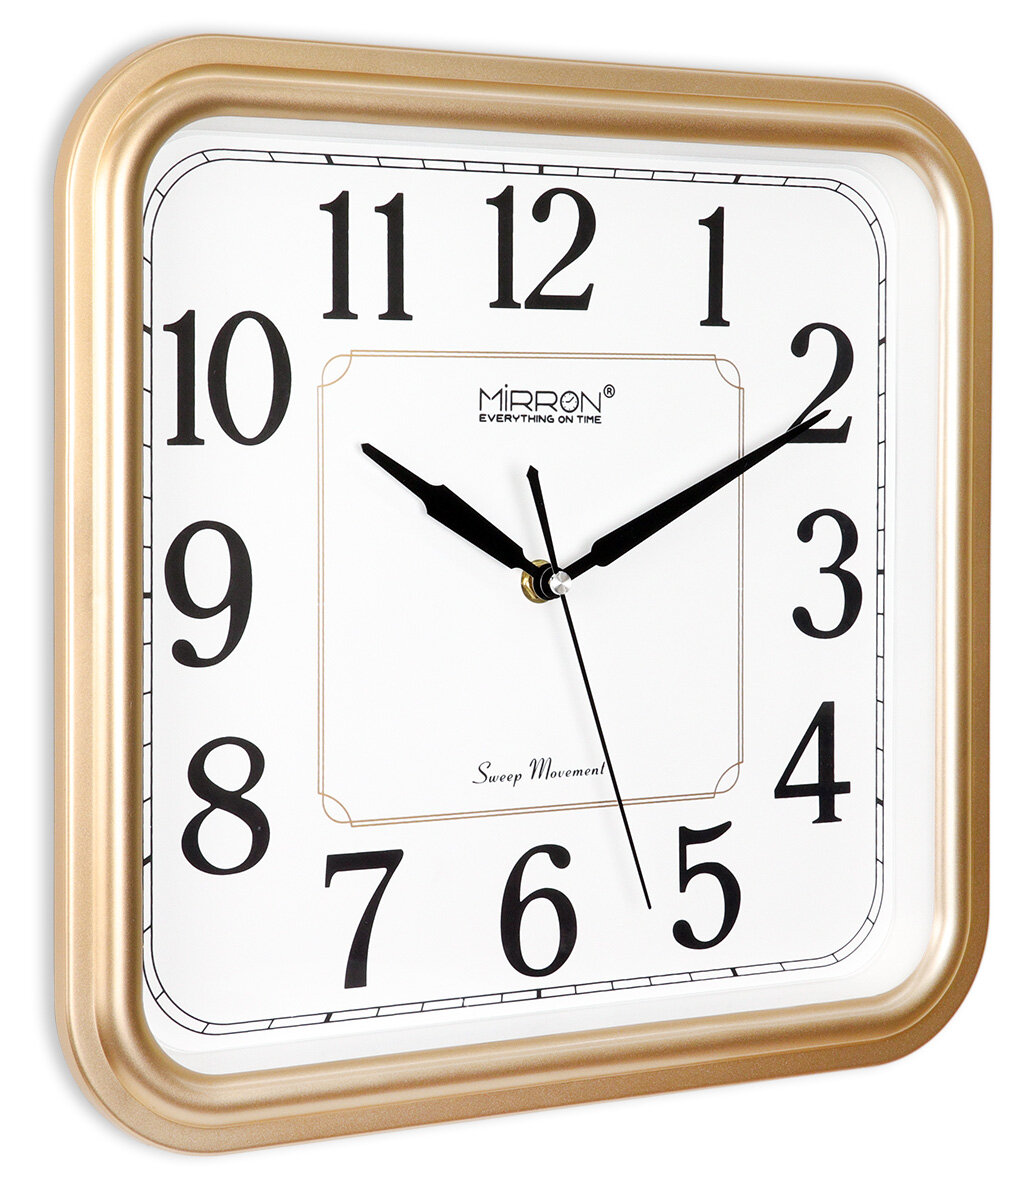 Настенные кварцевые часы MIRRON P2567A ЗБ/Большие квадратные часы/Белый (светлый) циферблат/Золотой цвет корпуса/Часы в подарок/Бесшумные кварцевые часы